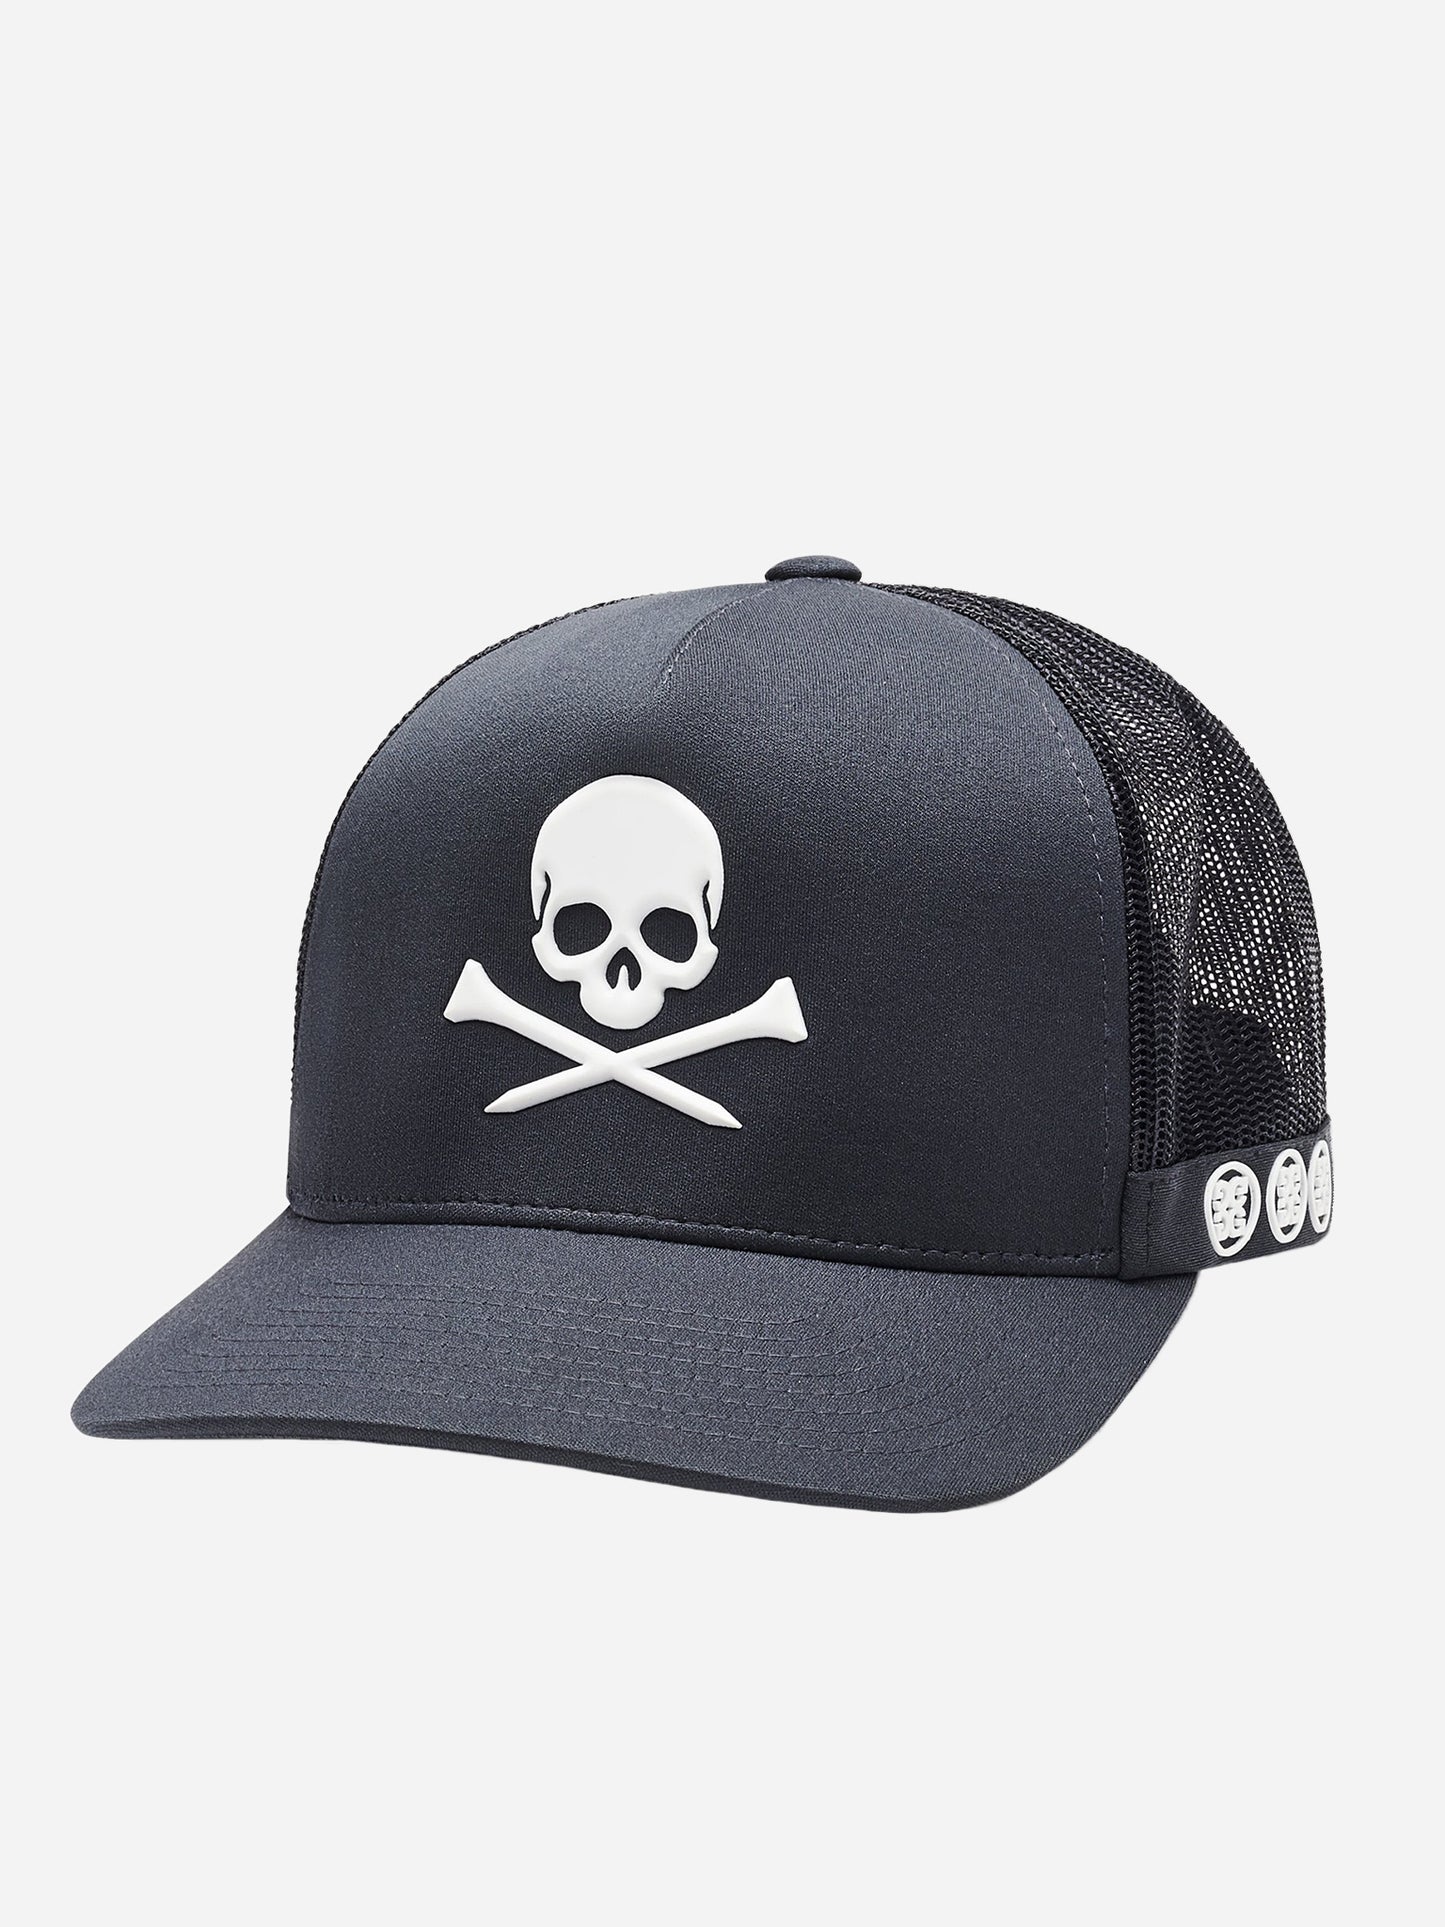 G/Fore Men's Skull & T's Trucker Hat